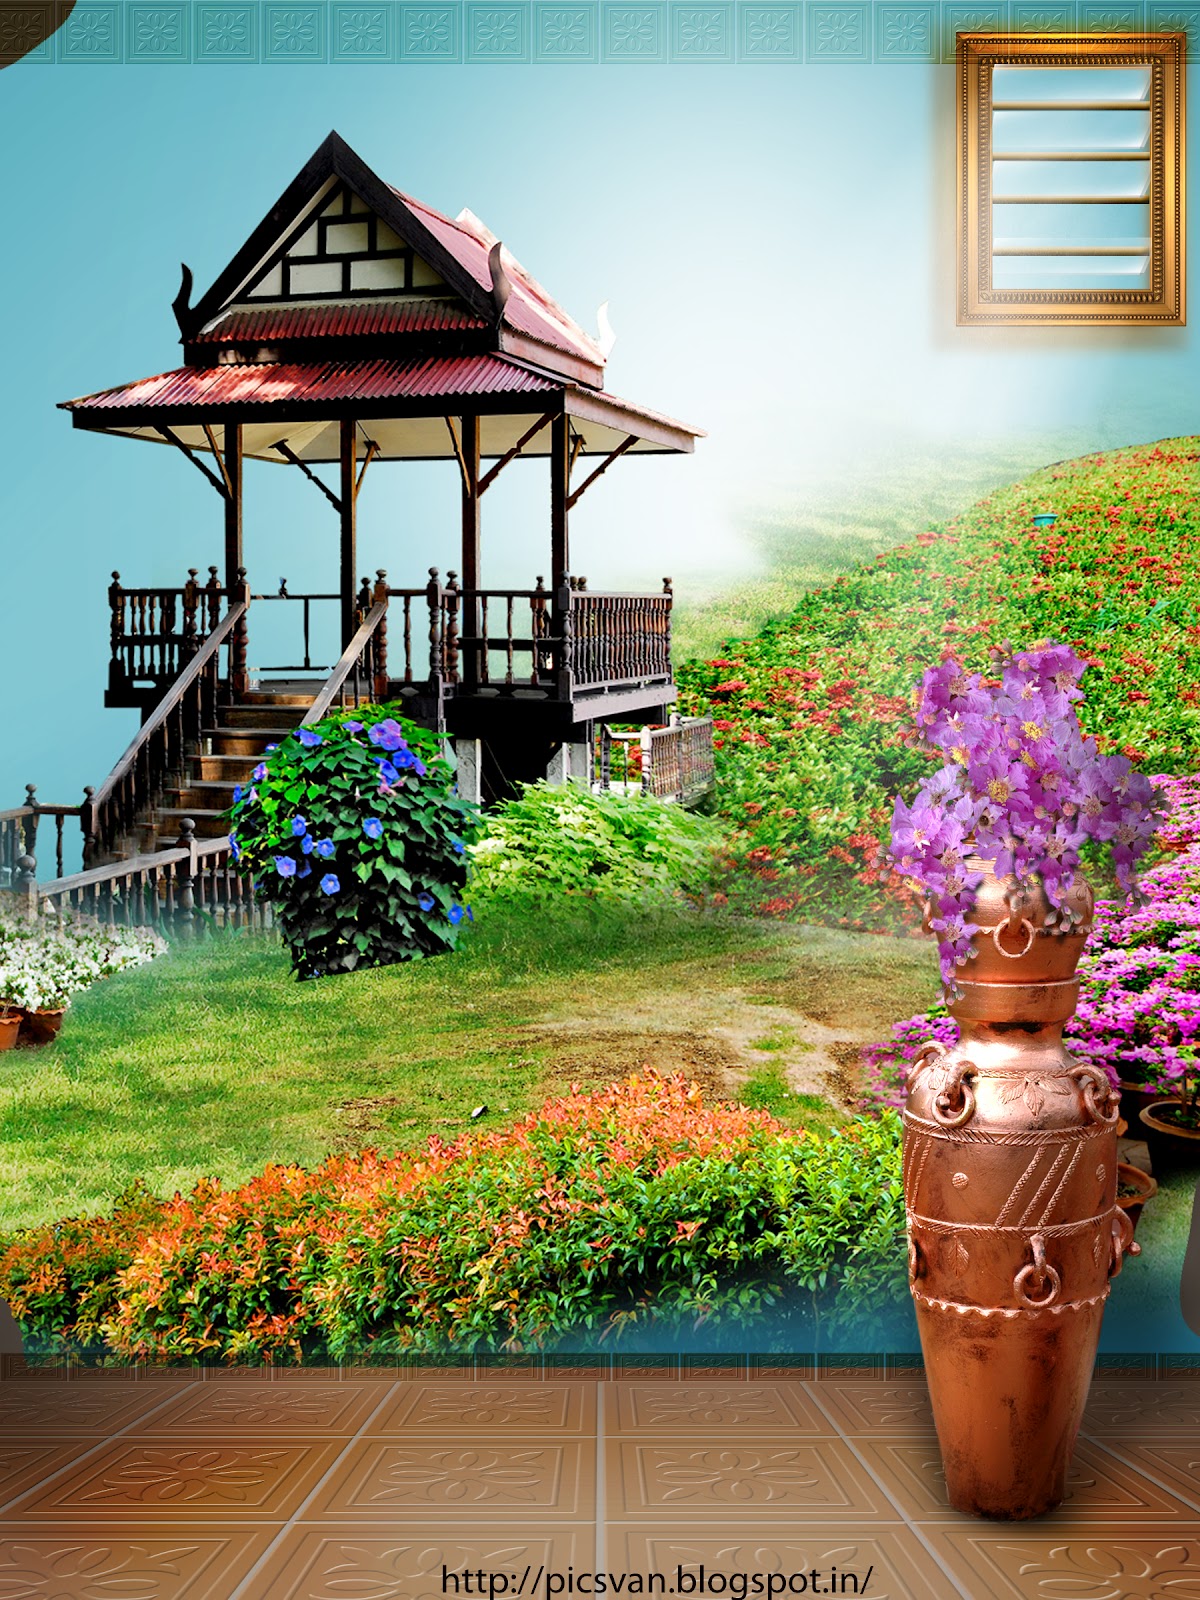 hintergrundbild des photoshop studios,blumentopf,eigentum,haus,zuhause,zimmerpflanze